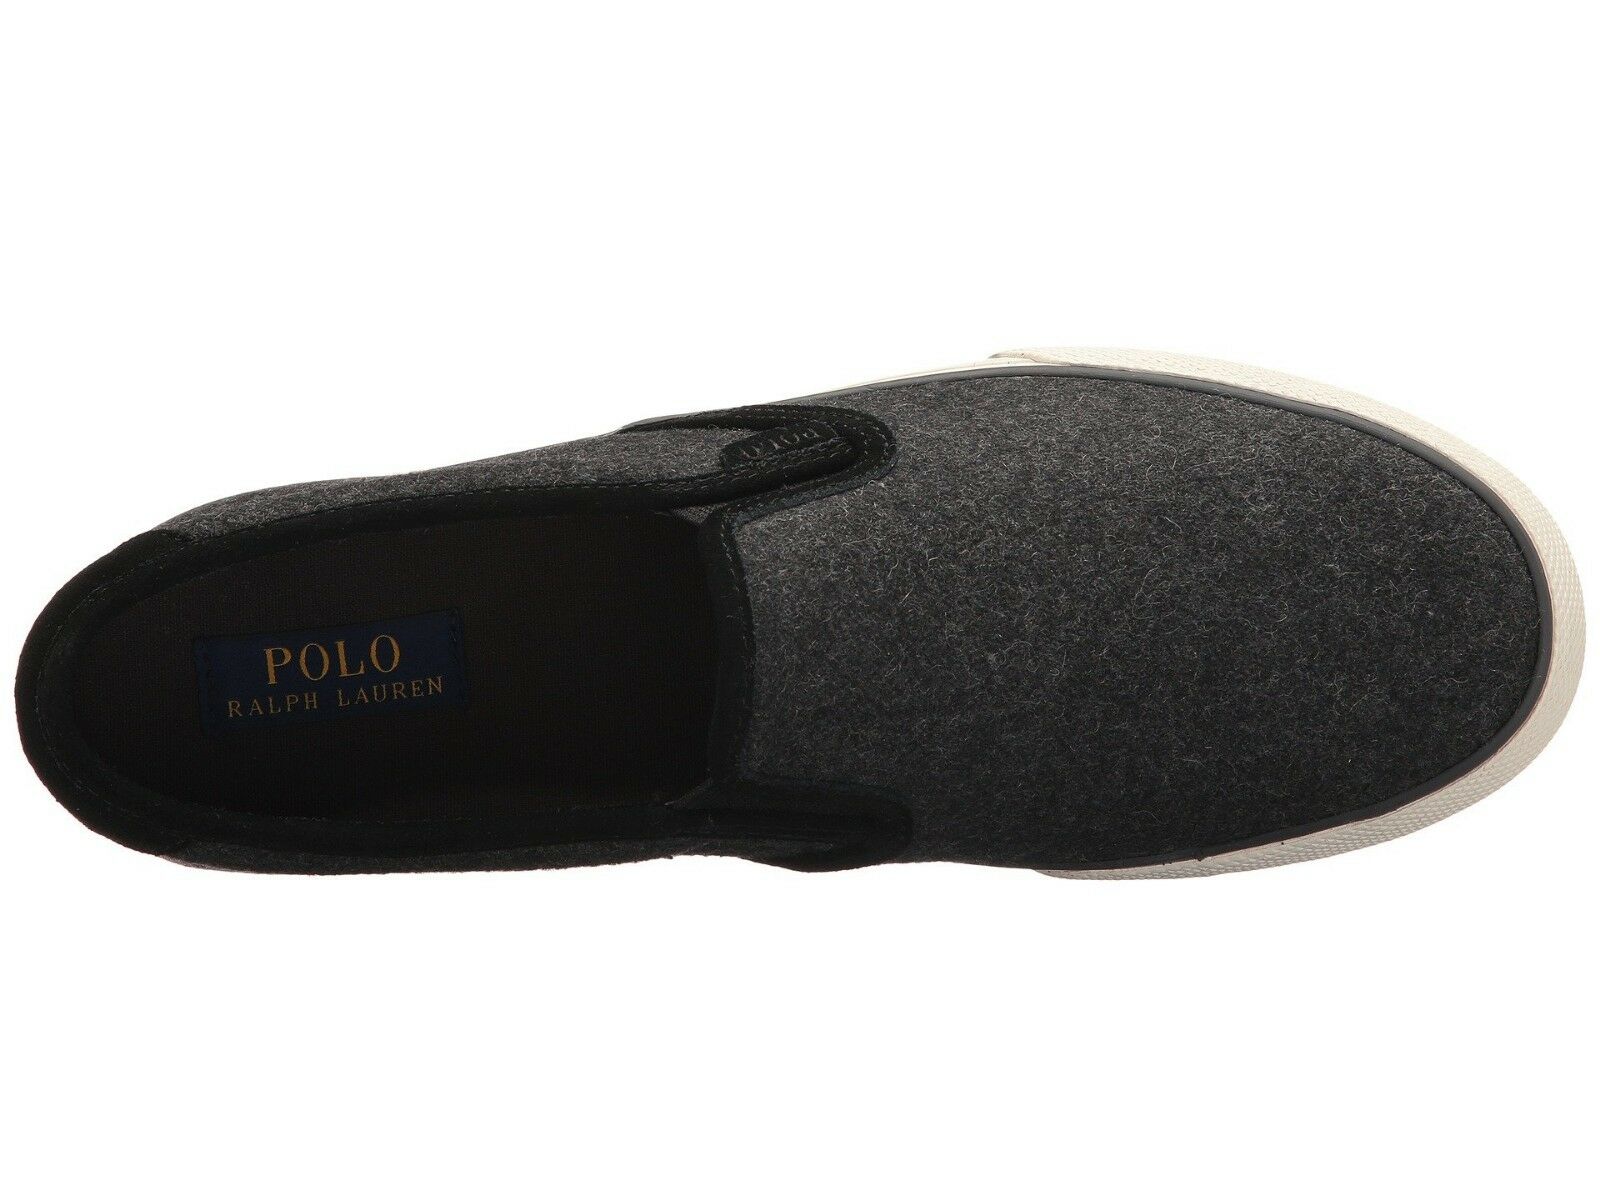 Polo Ralph Lauren Men's Vaughn slip-on II Sneaker shoes, Charcoal Heather SZ 9 D - image 3 of 4